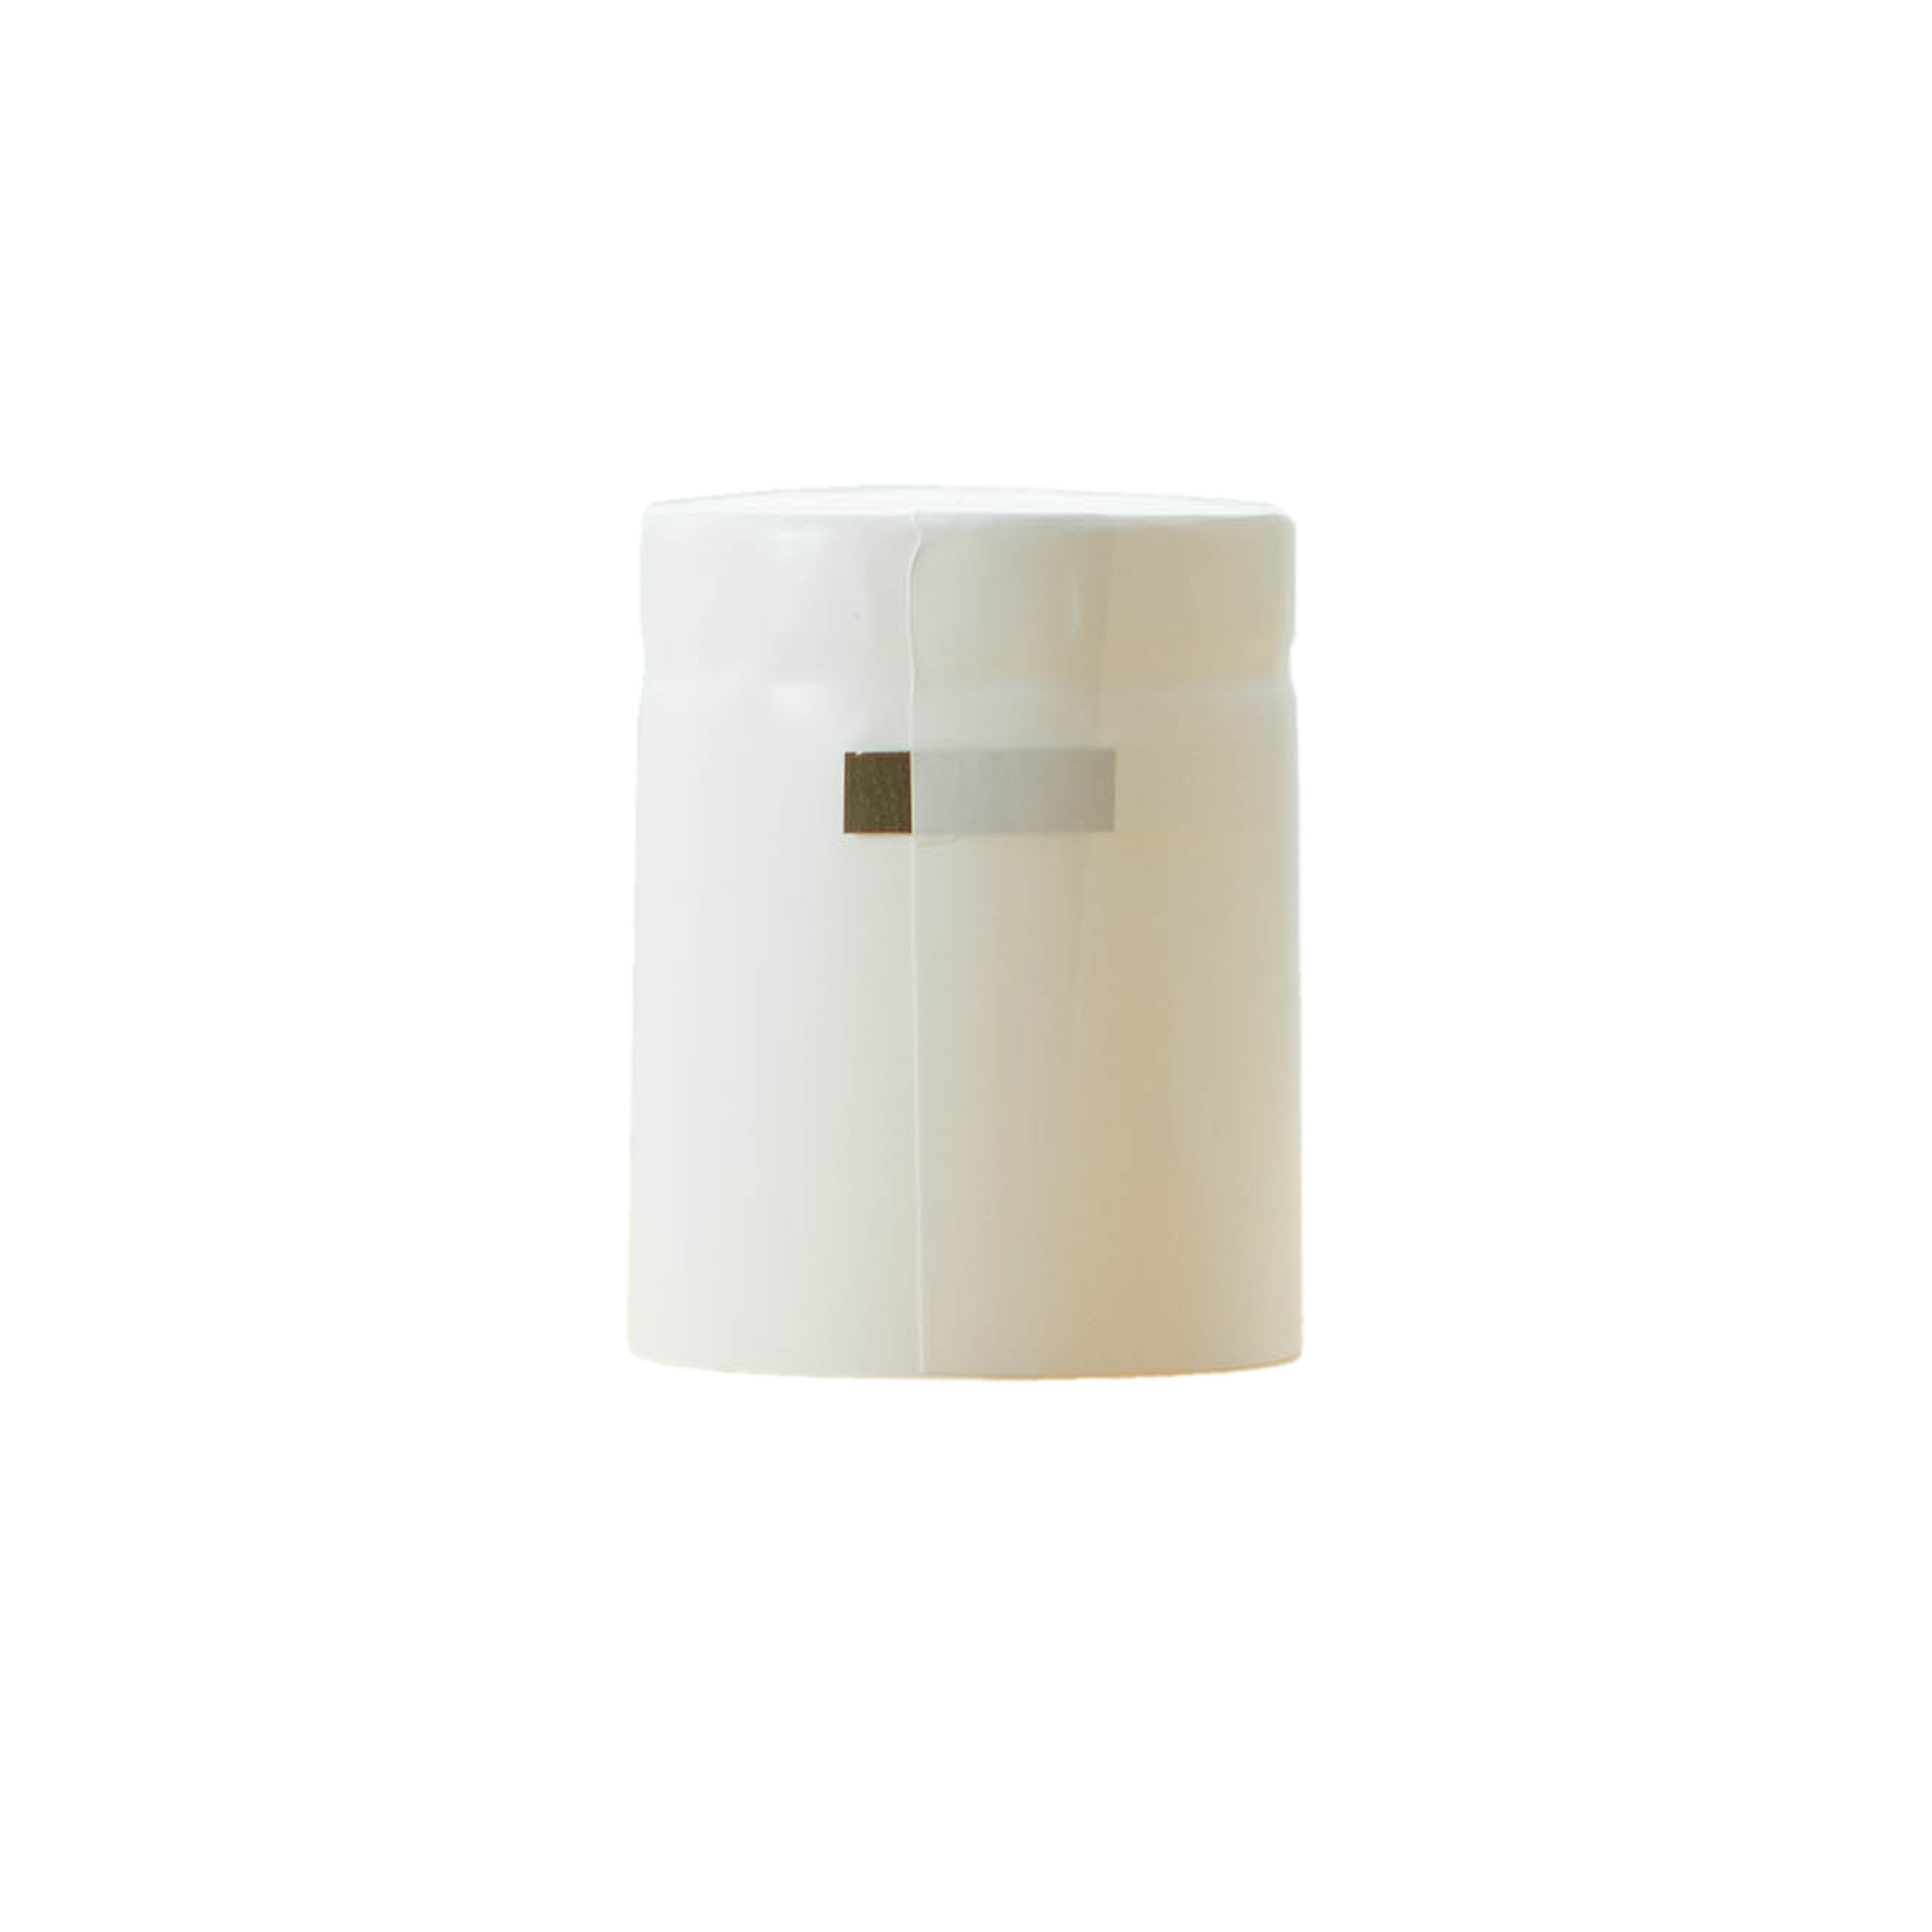 Kapturek termokurczliwy 32x41, tworzywo sztuczne PVC, kolor biały